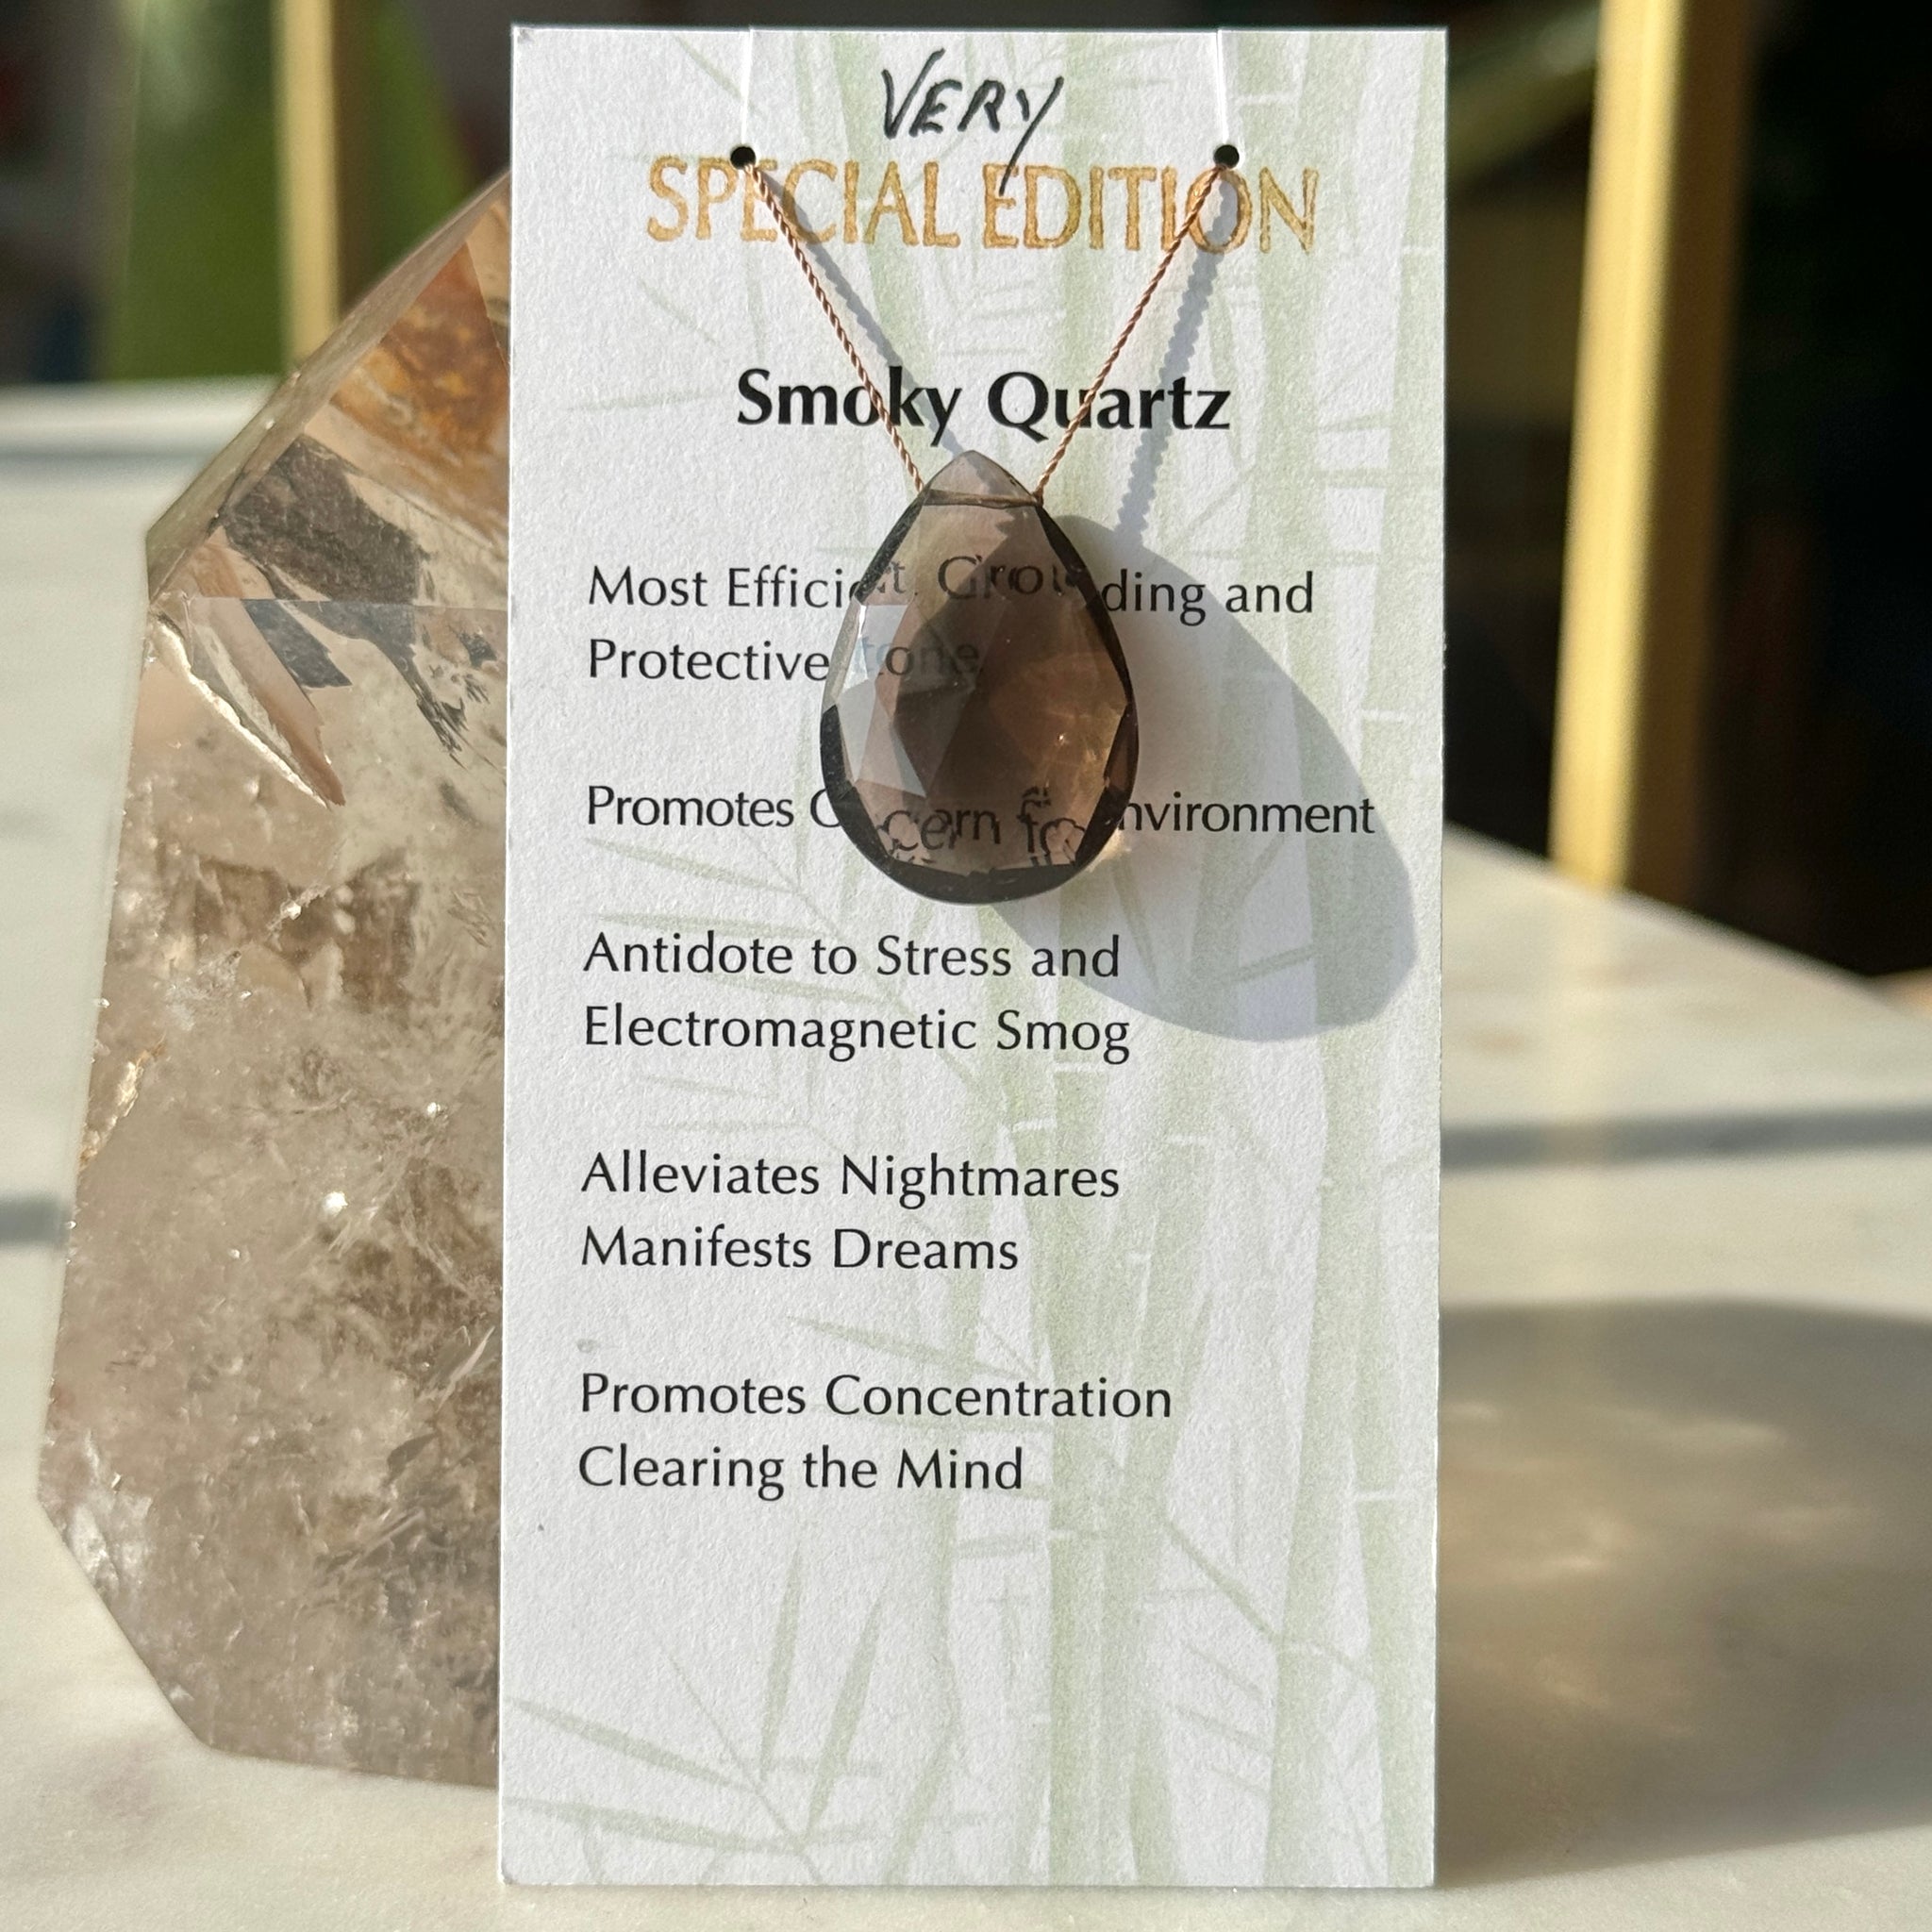 Smoky Quartz Very Special Edition